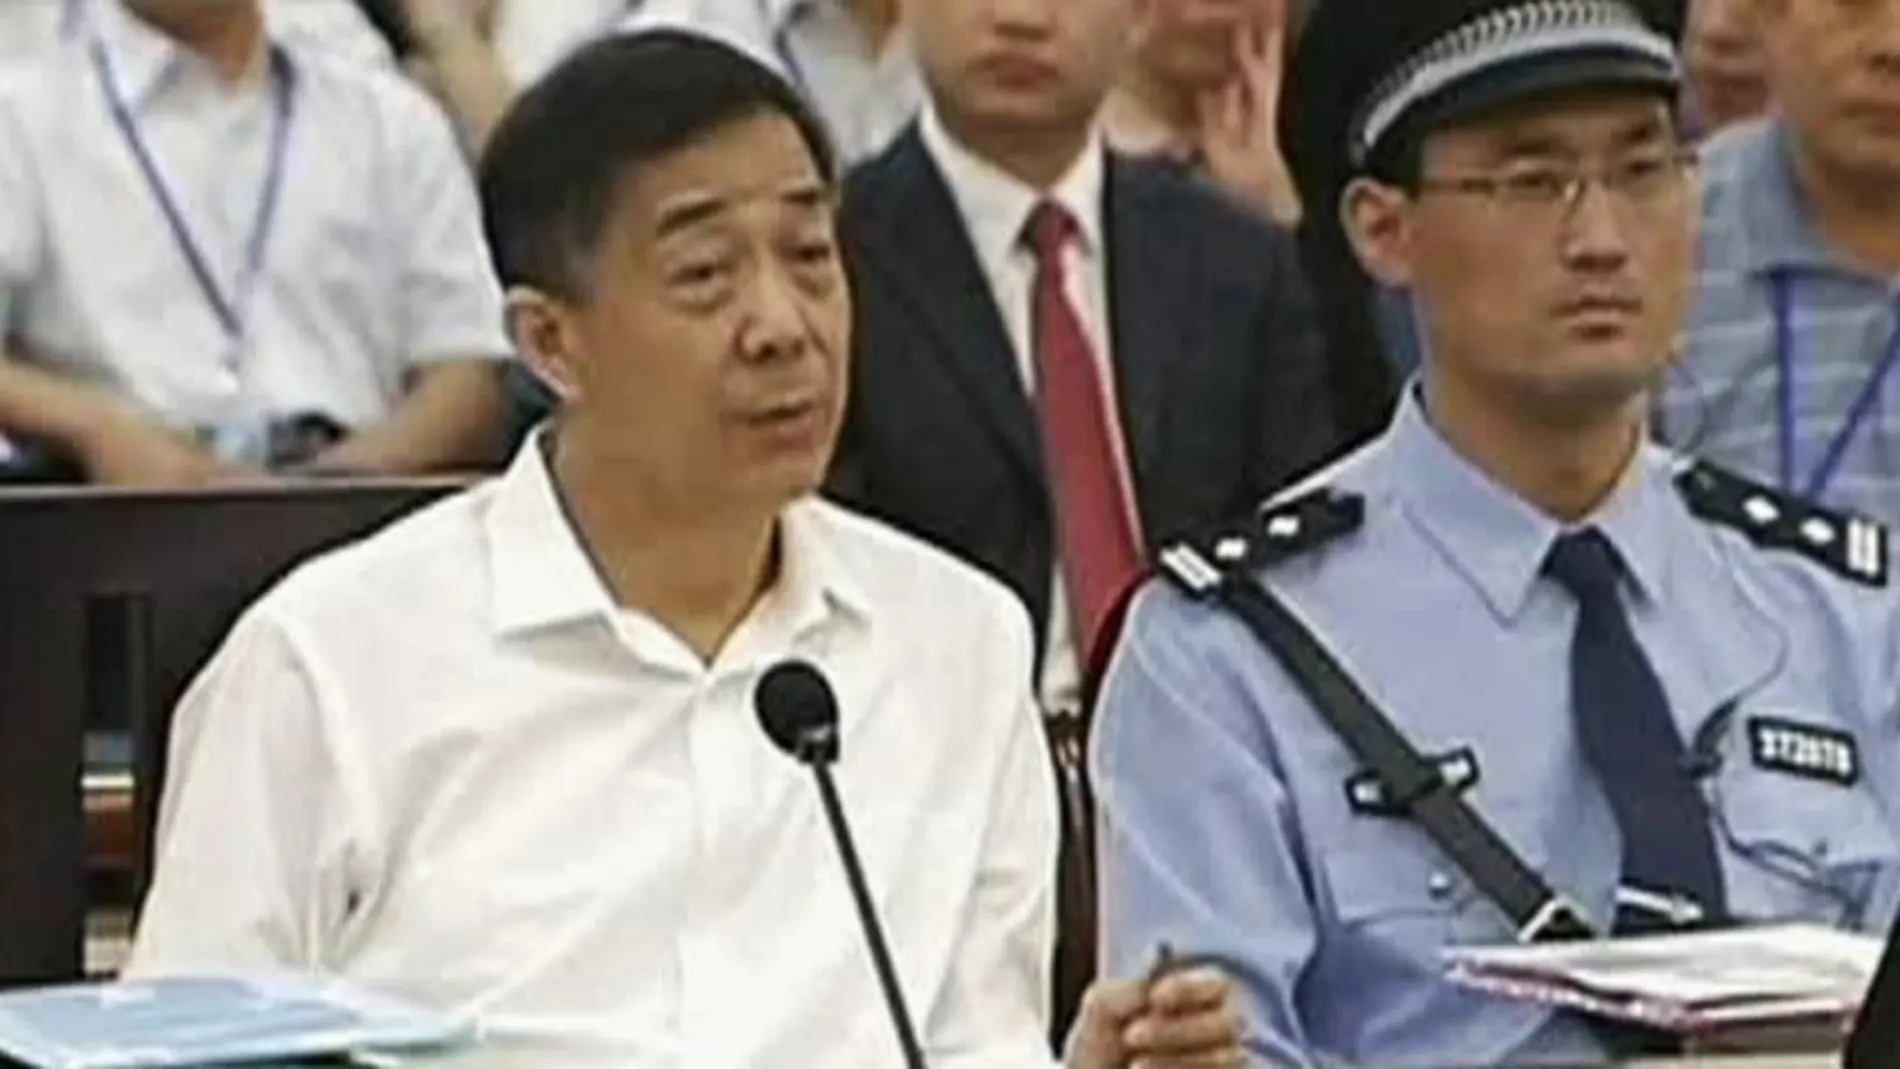 Bo Xilai durane la primera jornada del juicio